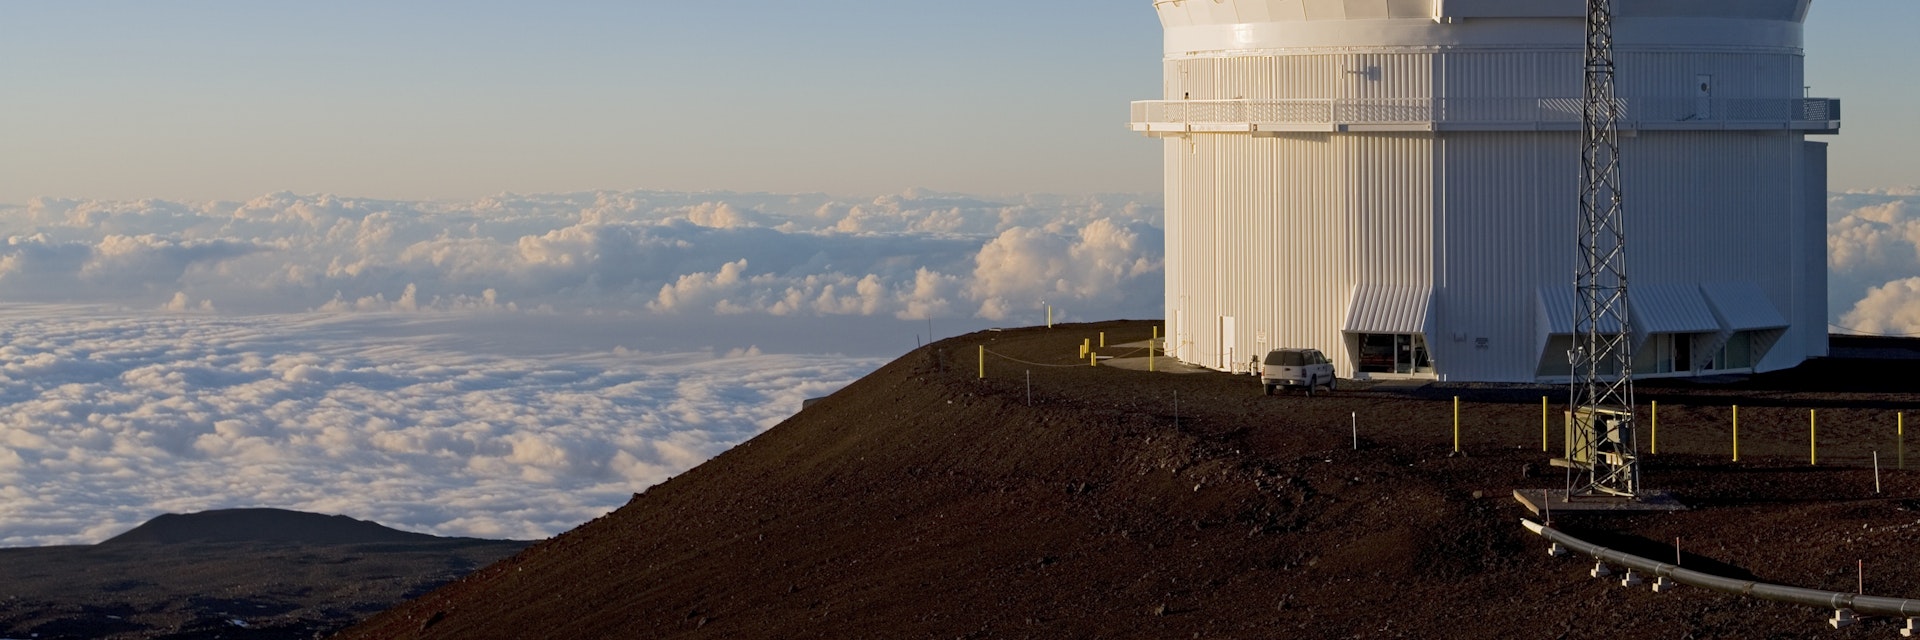 Observatories at Mauna Kea summit, Mauna Kea.